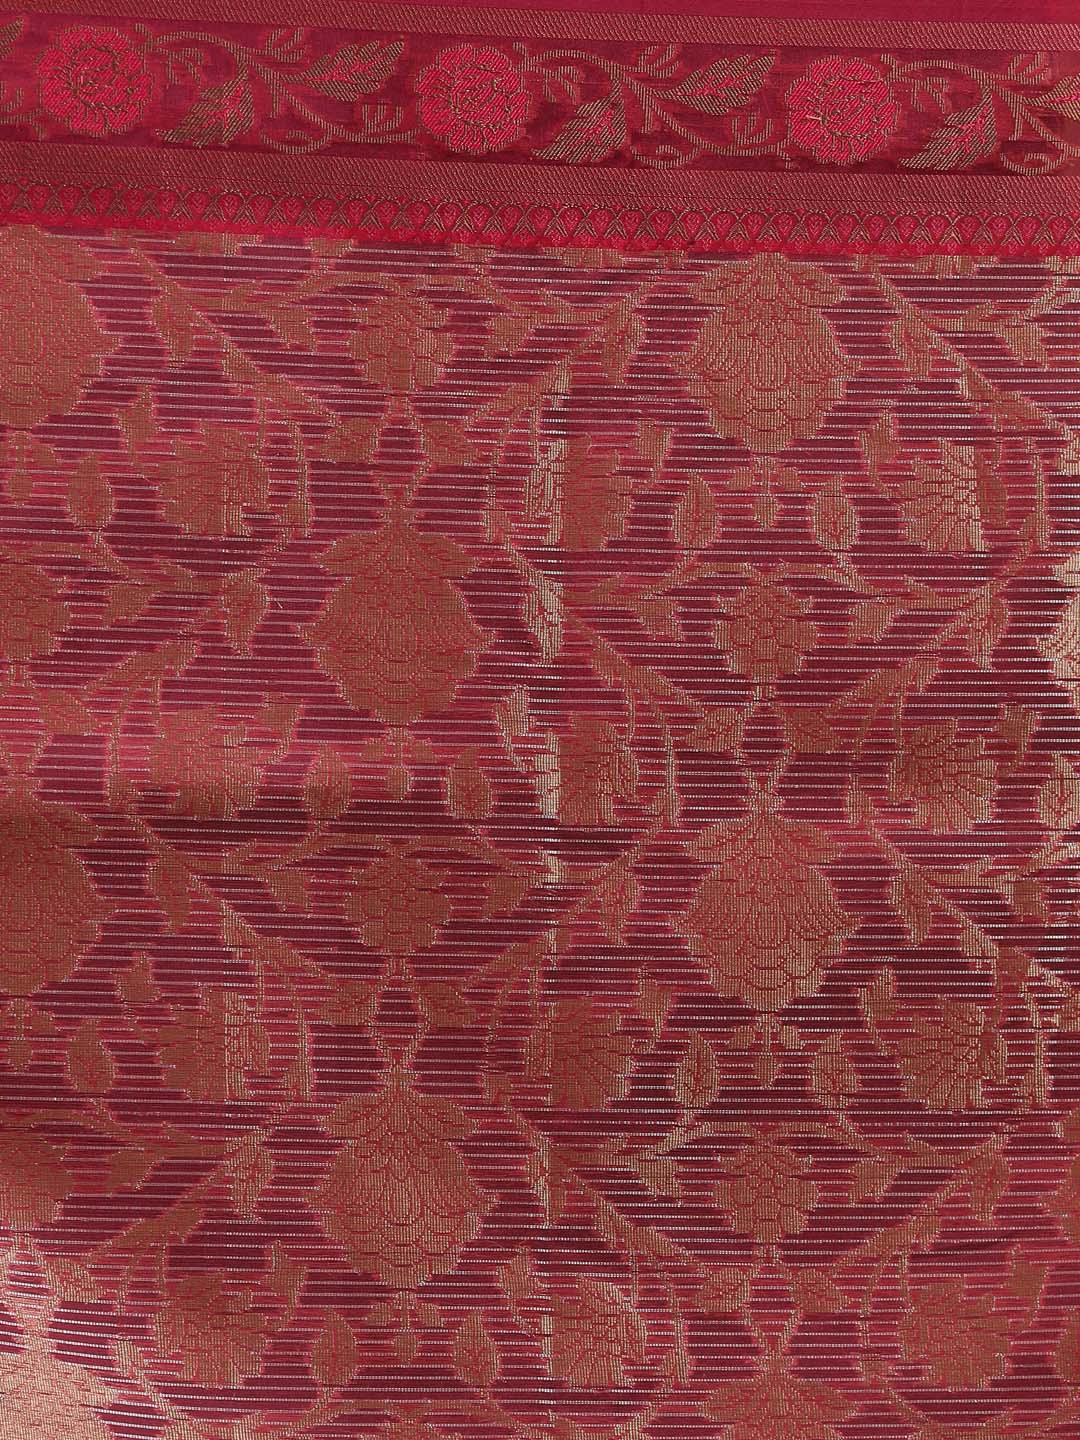 Indethnic Banarasi Magenta Floral Woven Design Traditional Wear Saree - Saree Detail View